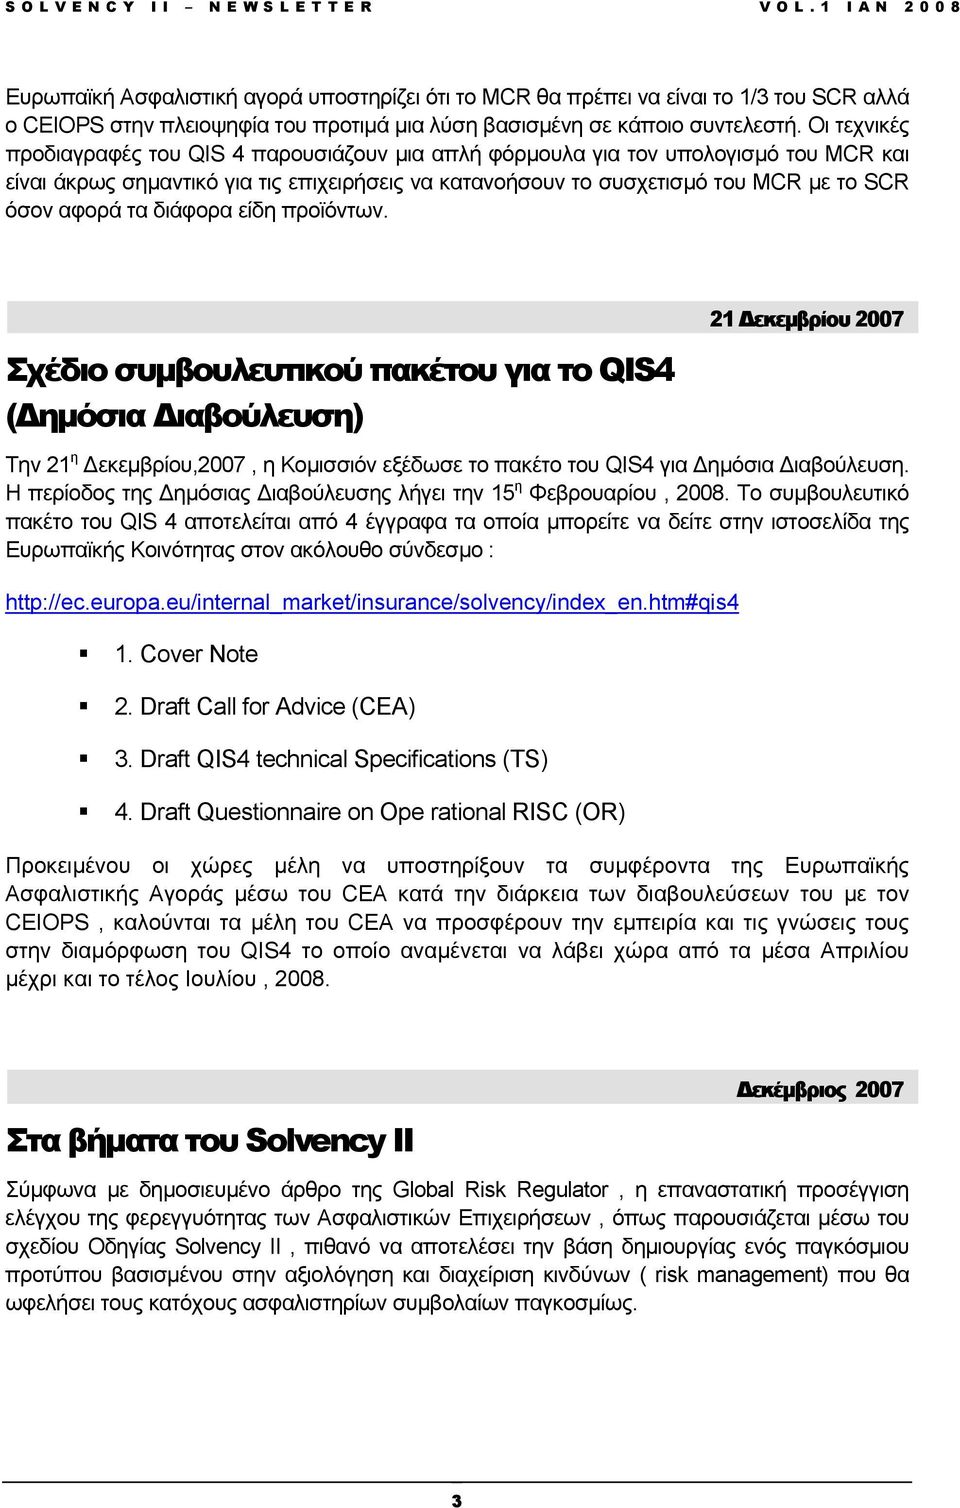 τα διάφορα είδη προϊόντων. Σχέδιο συµβουλευτικού πακέτου για το QIS4 ( ηµόσια ιαβούλευση) 21 εκεµβρίου 2007 Την 21 η εκεµβρίου,2007, η Κοµισσιόν εξέδωσε το πακέτο του QIS4 για ηµόσια ιαβούλευση.